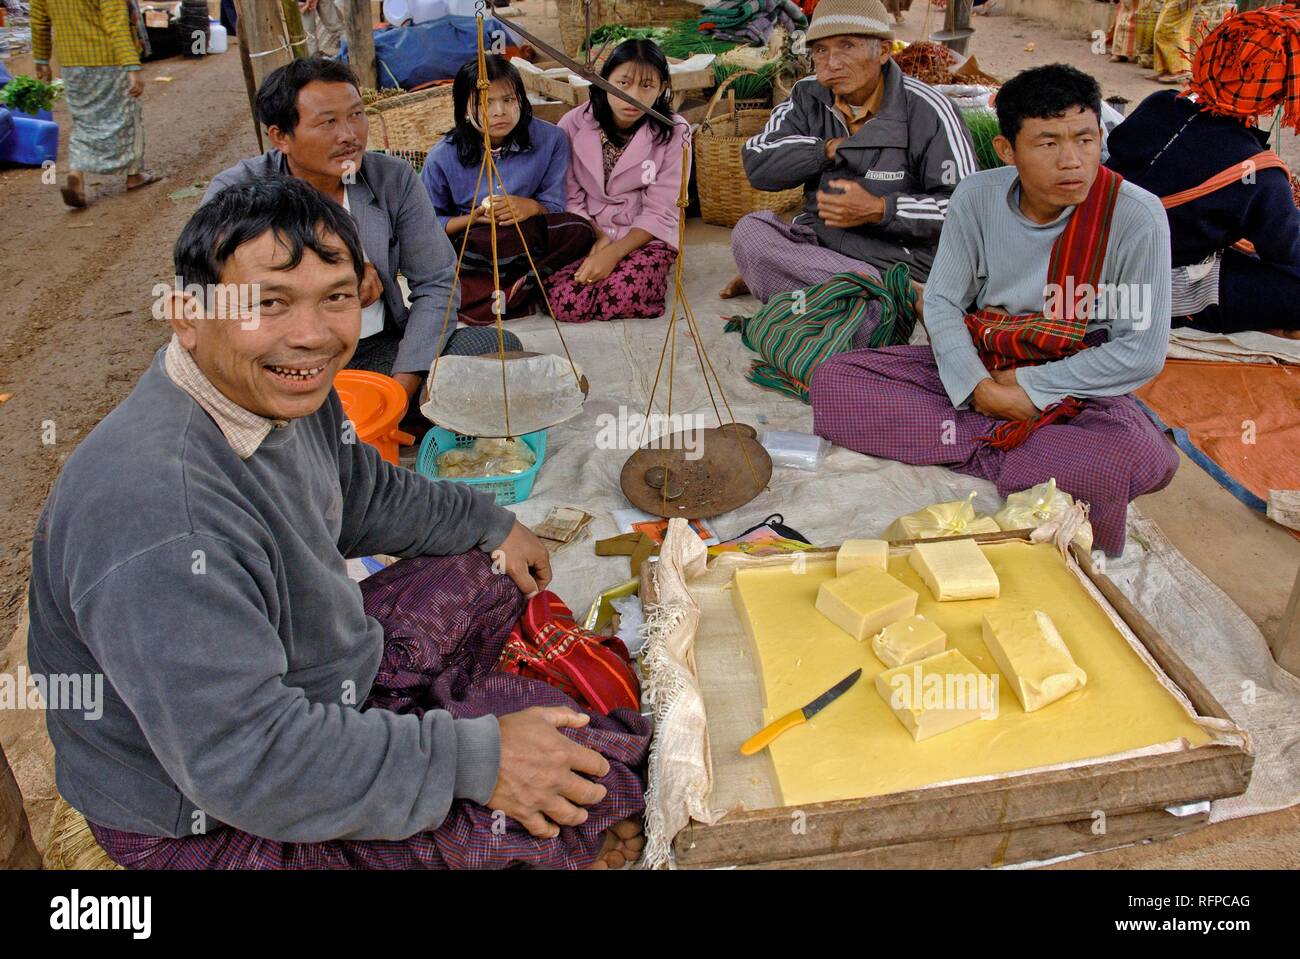 Scène de marché, le fromage fait de graines de soja pour la vente, Myanmar, Birmanie Banque D'Images